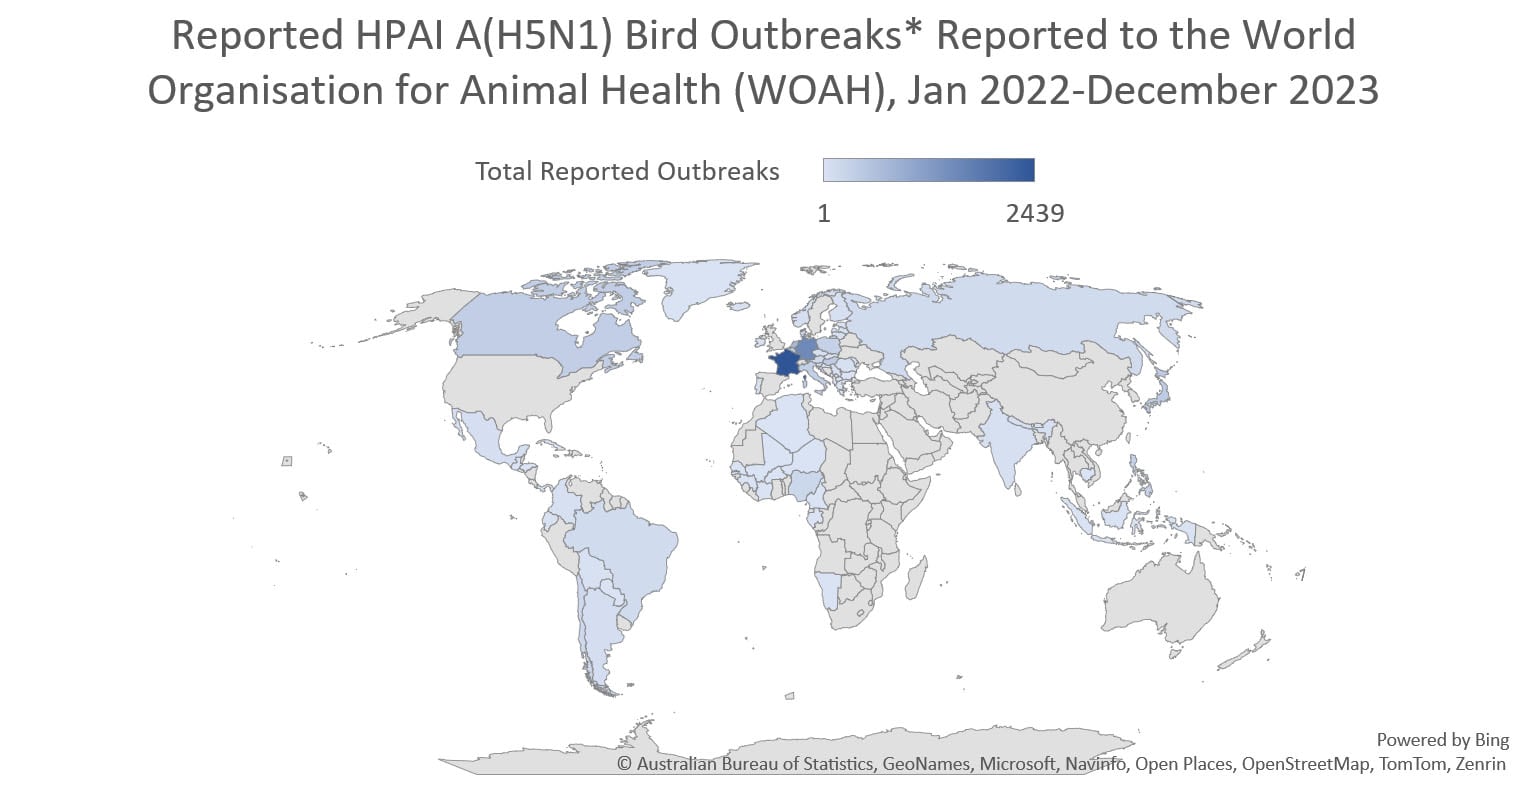 Brotes en aves del virus A(H5N1) de la HPAI* notificados a la Organización Mundial de Sanidad Animal (WHOAH) entre enero del 2022 y diciembre del 2023